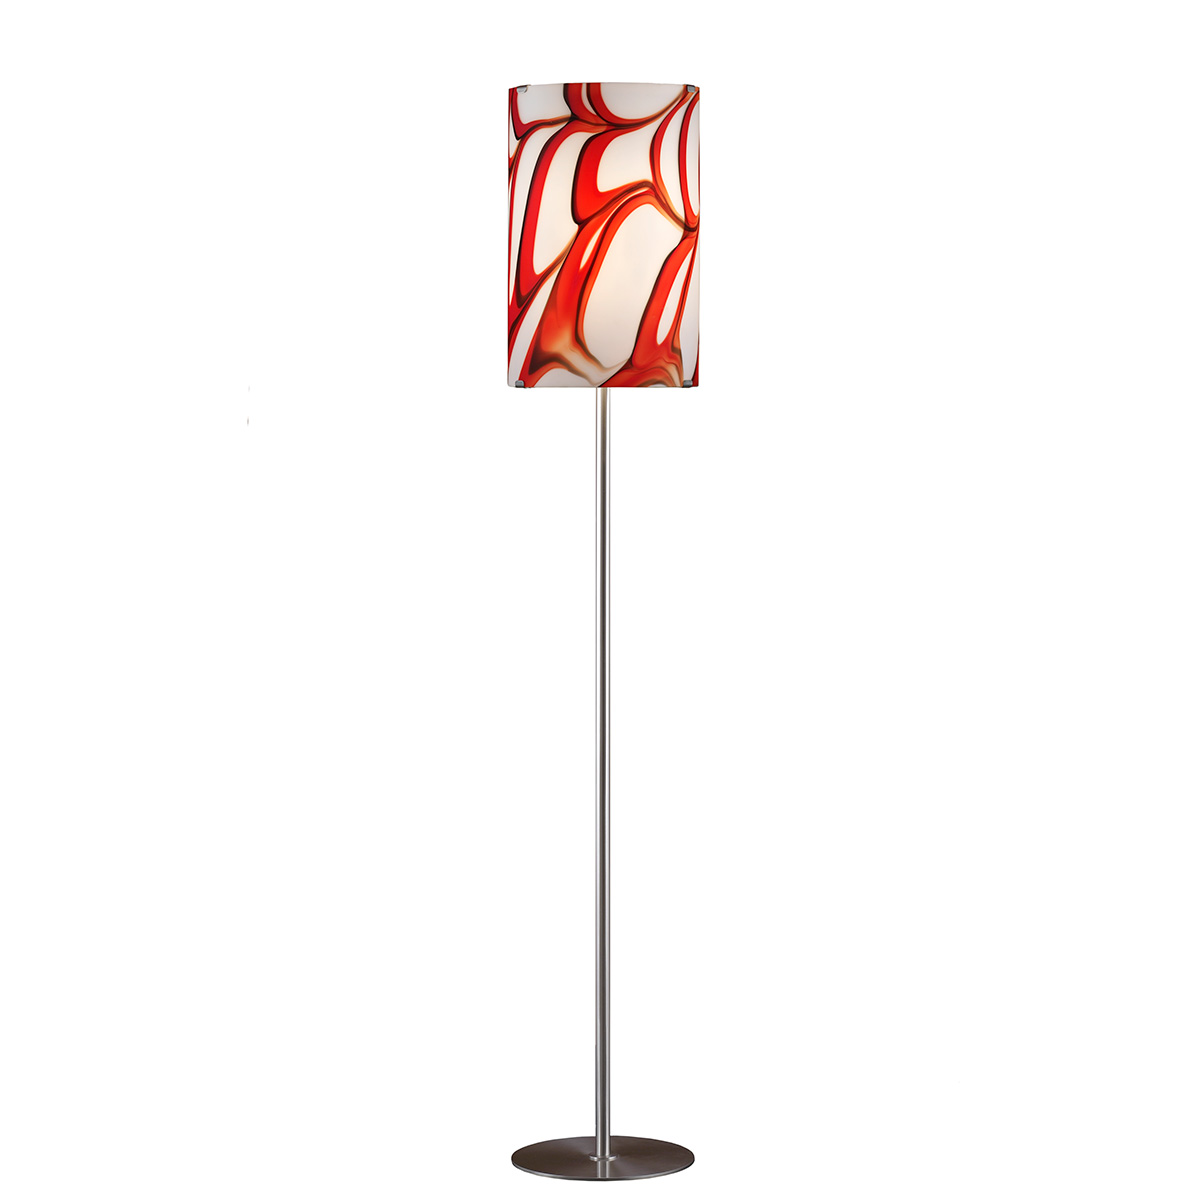 Μοντέρνο φωτιστικό δαπέδου Μουράνο COLORE modern Murano floor lamp